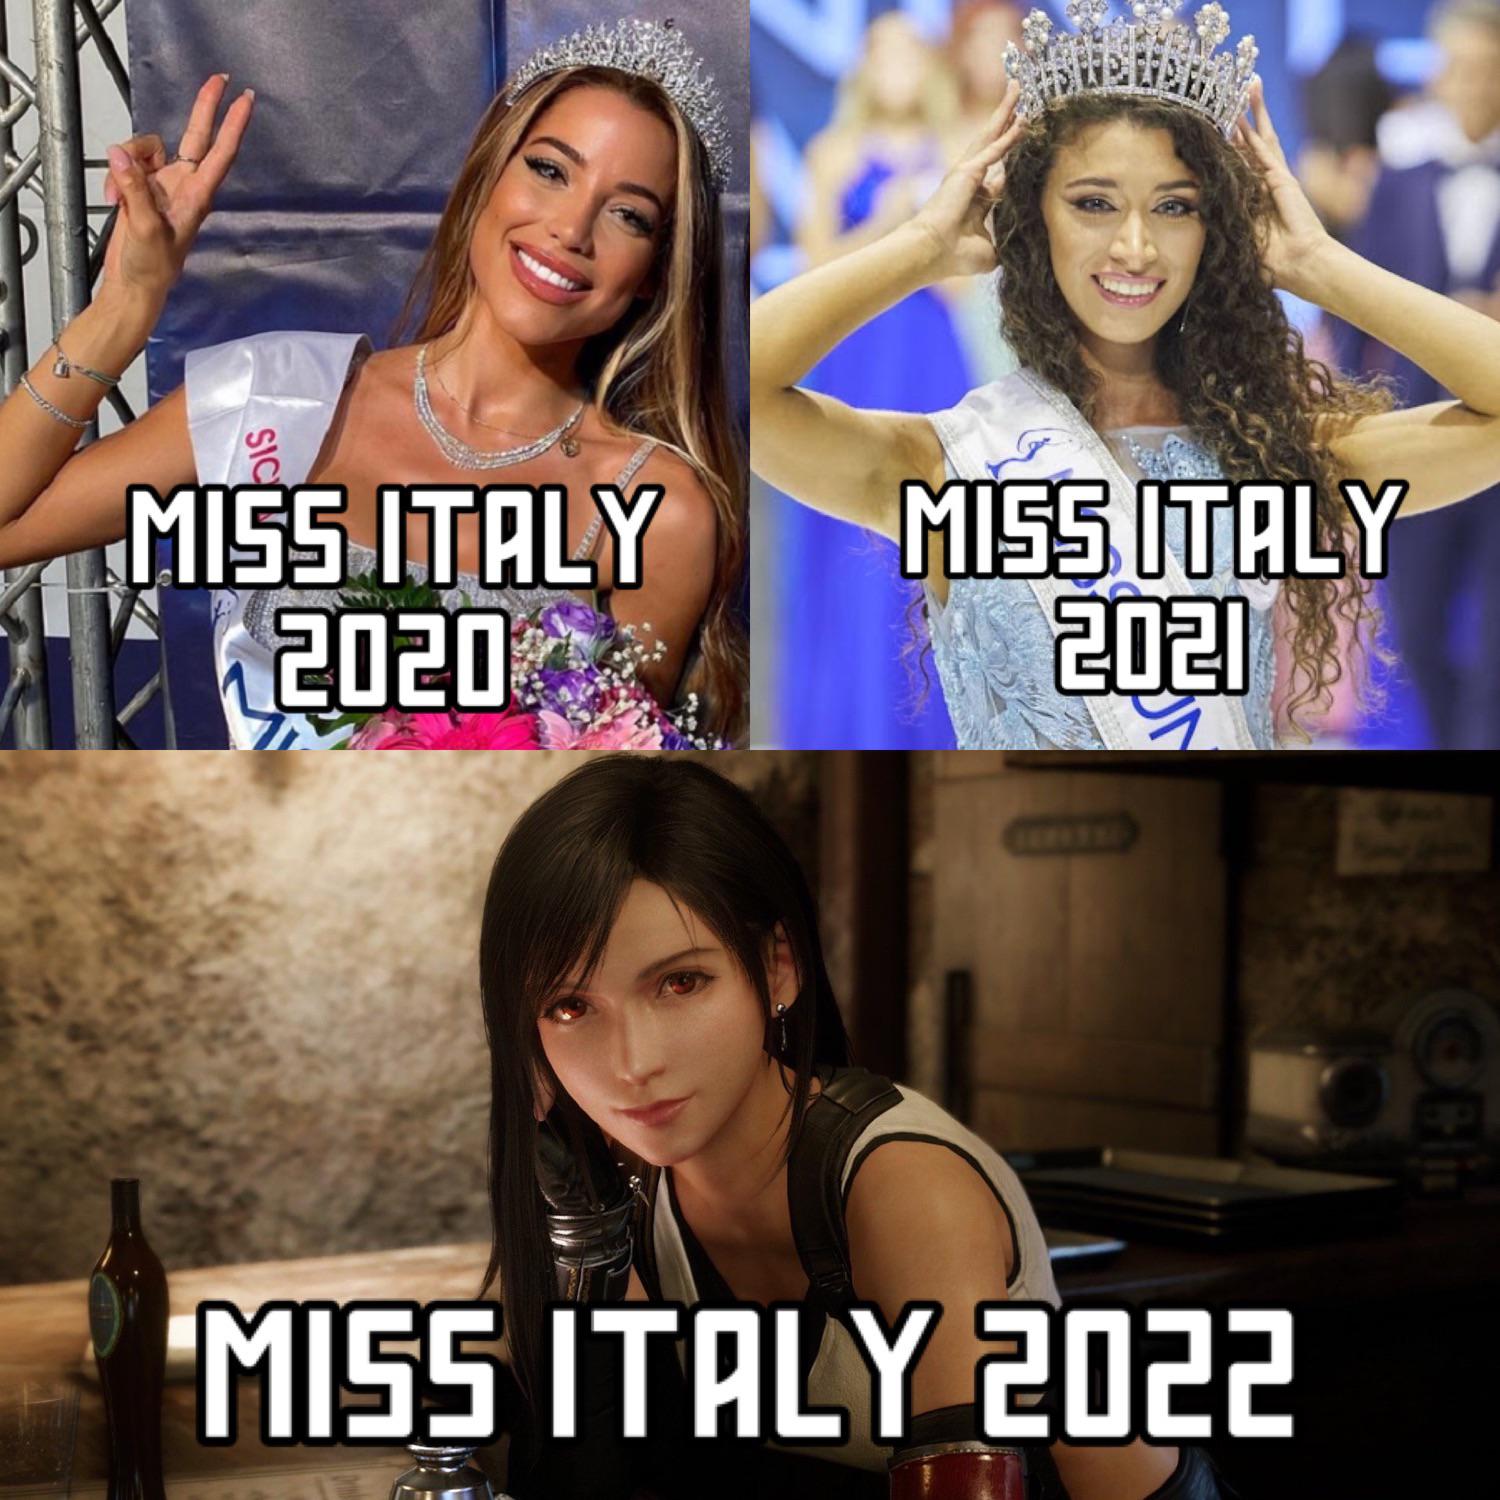 connect - Sic Miss Italy 2020 Miss Italy 2021 Miss Italy 2022